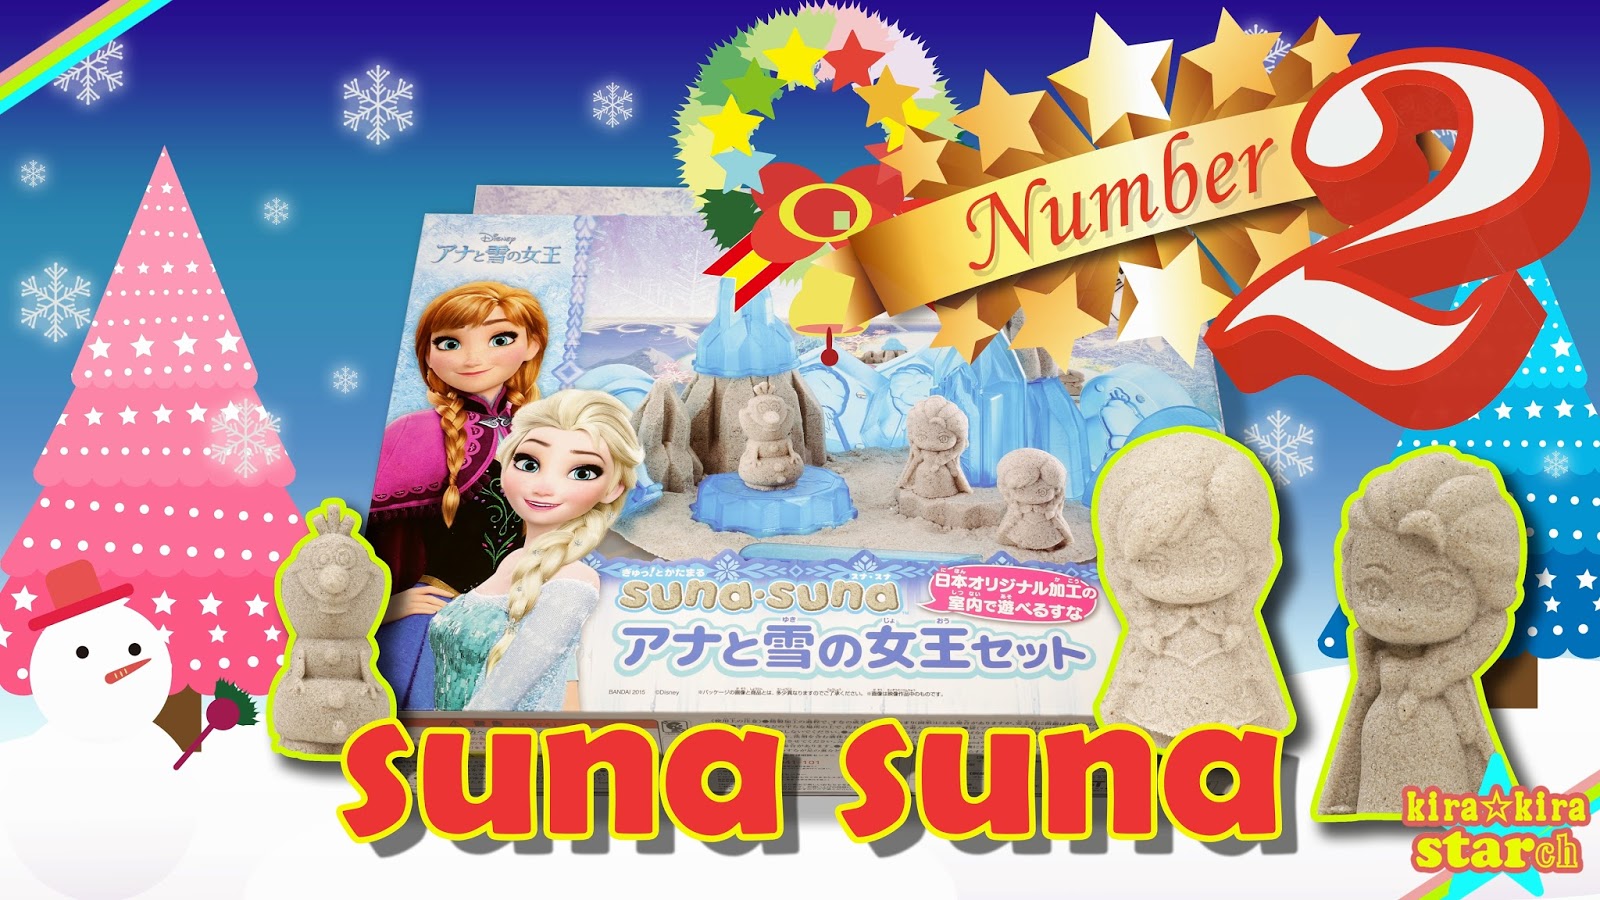 ディズニー アナと雪の女王映画のオラフのクリスマス編第二話 Sunasuna すなすな アナと雪の女王セット スナスナ アナ雪 で遊ぶ アンパンマンも登場 Frozen Toys キラキラスター チャンネル